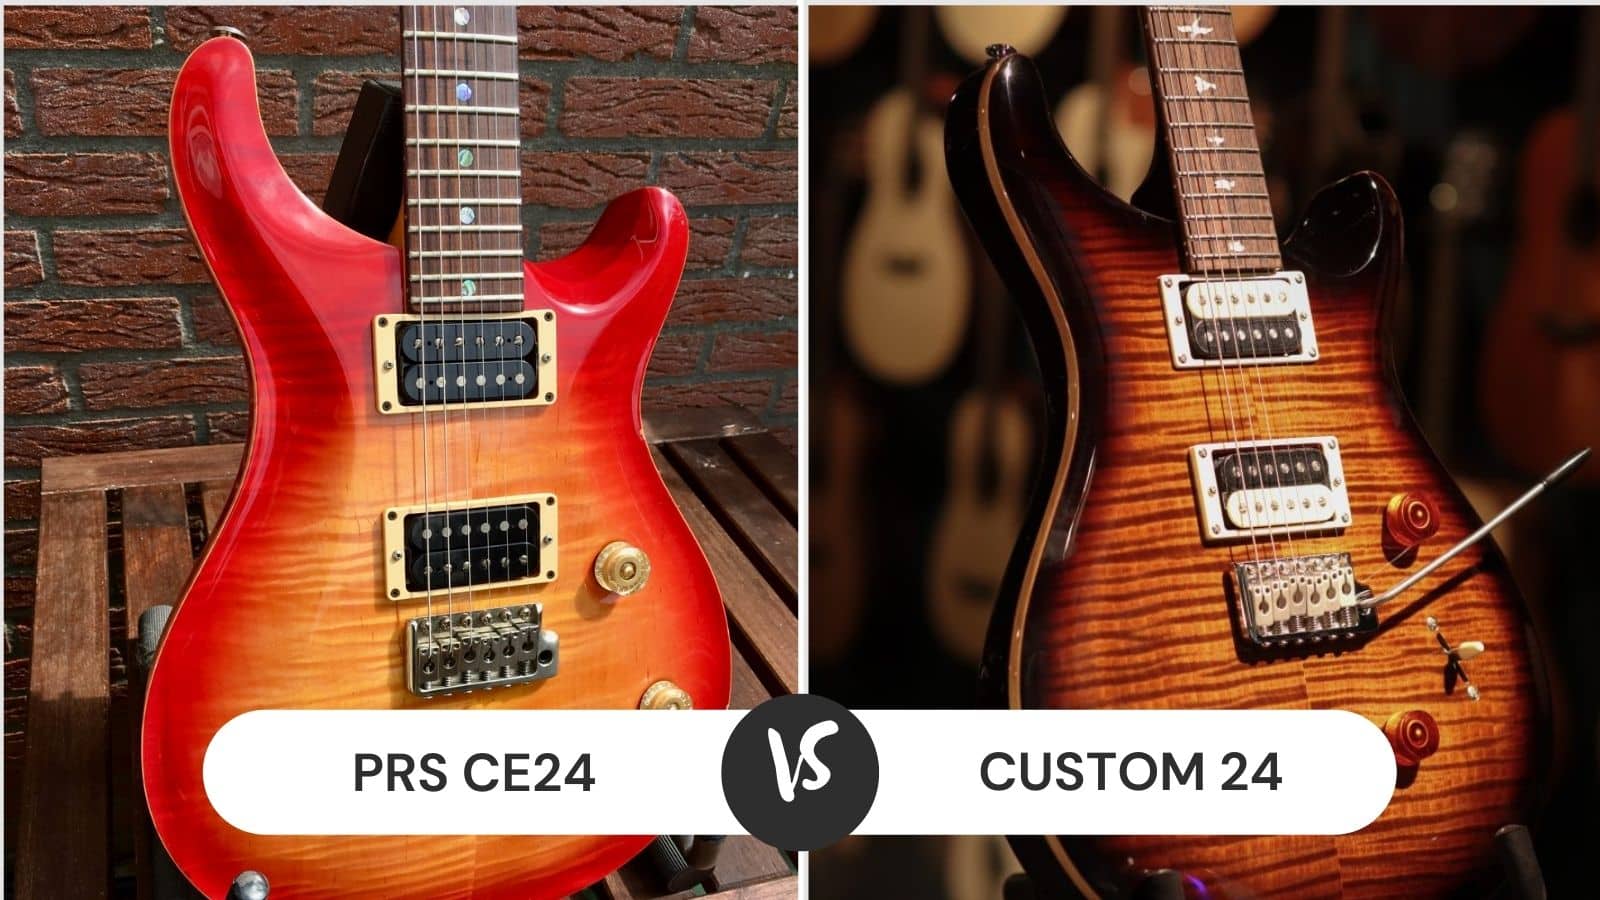 PRS CE24 vs Custom 24